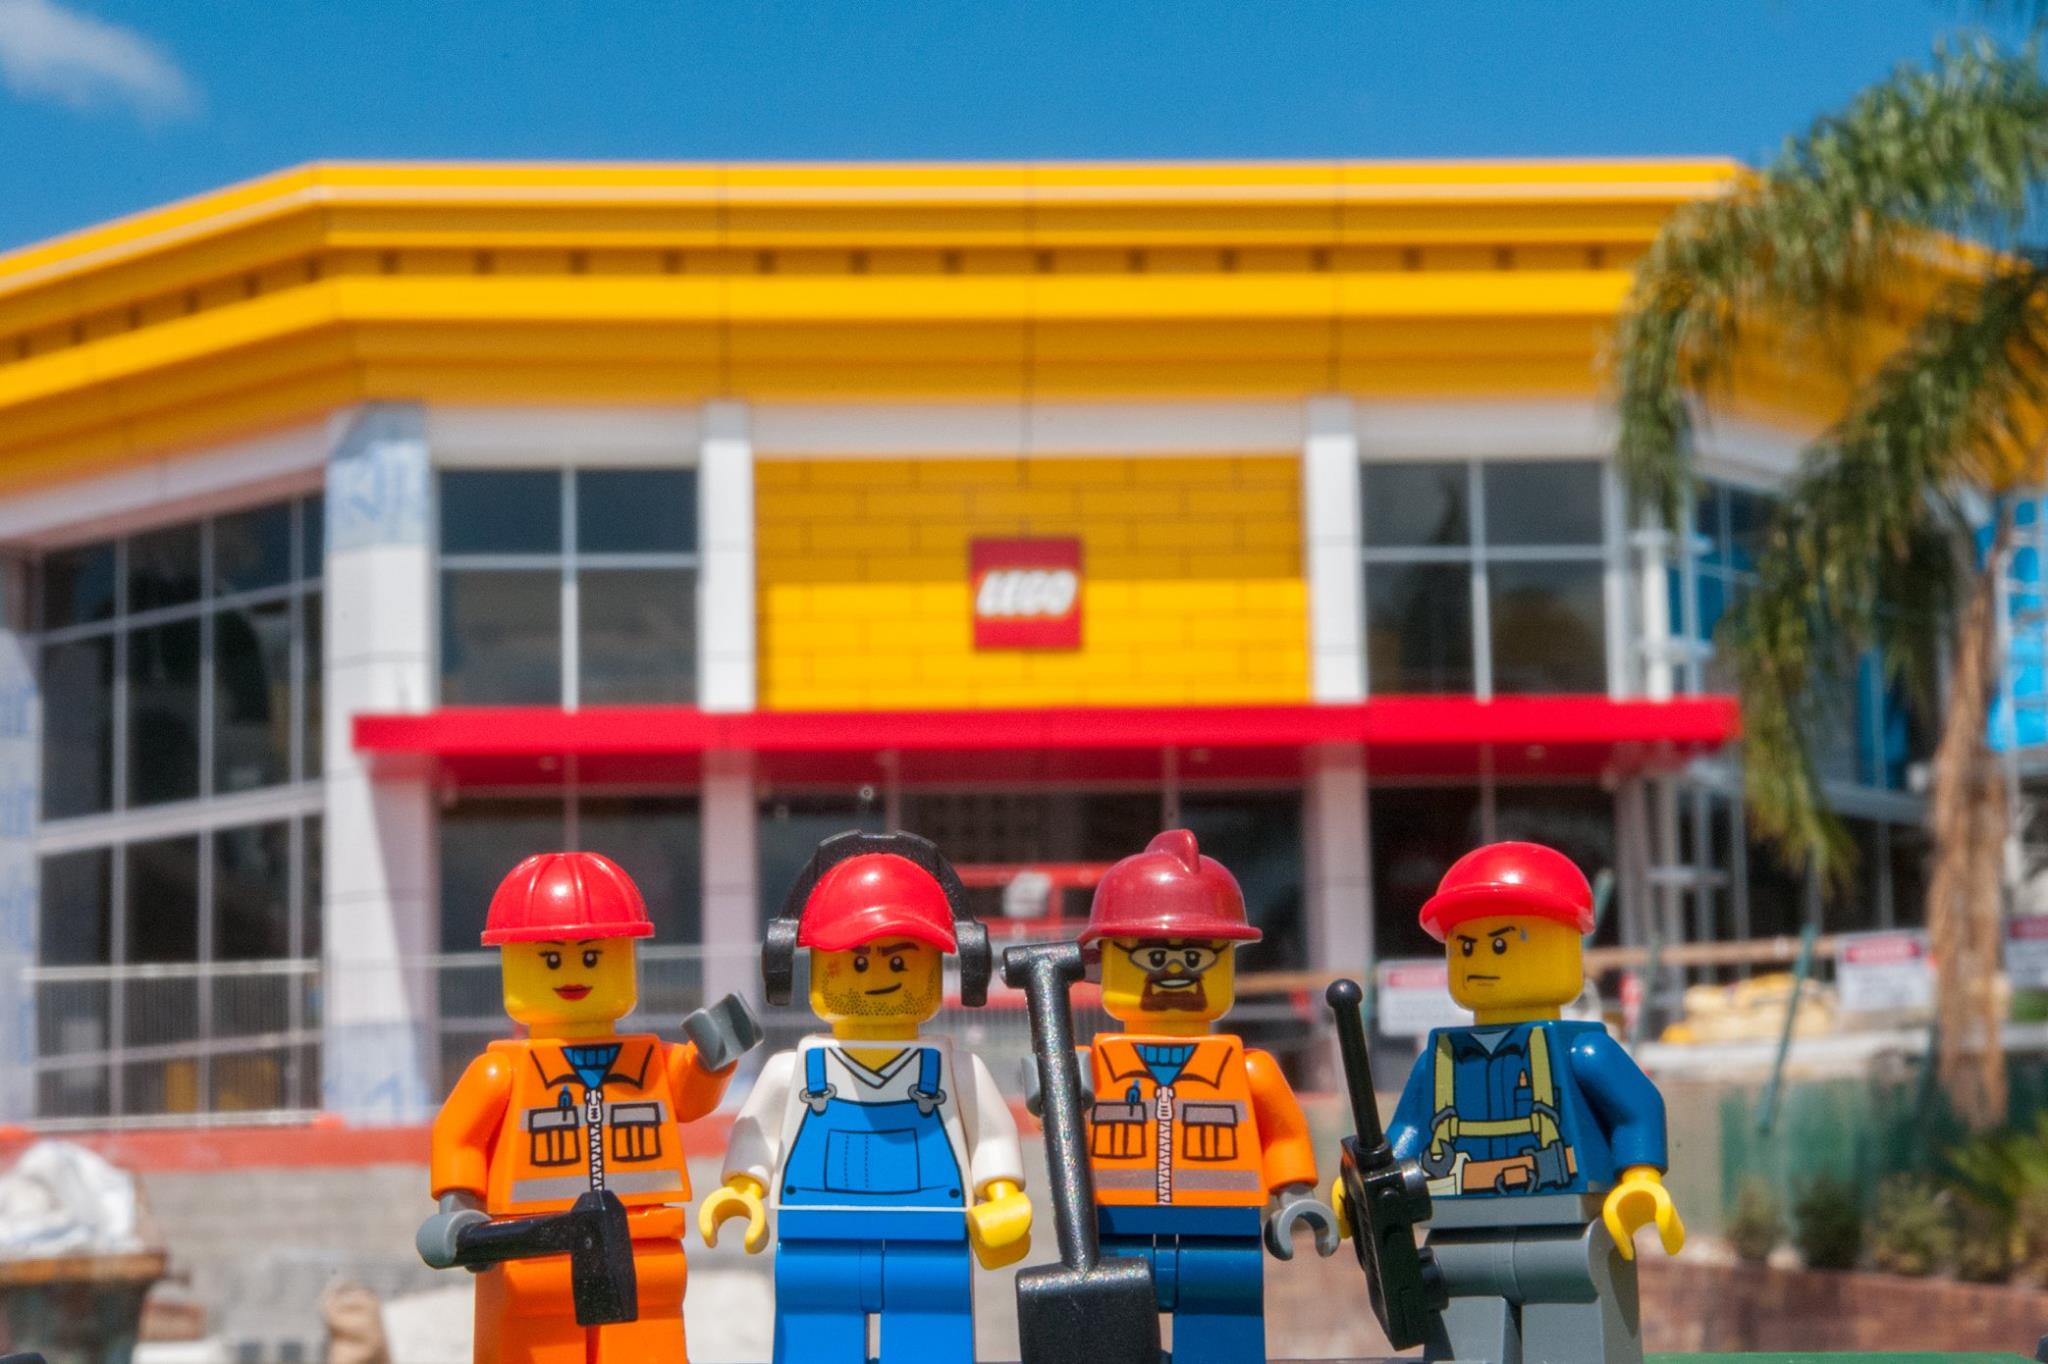 Dreamworld's New Lego Store